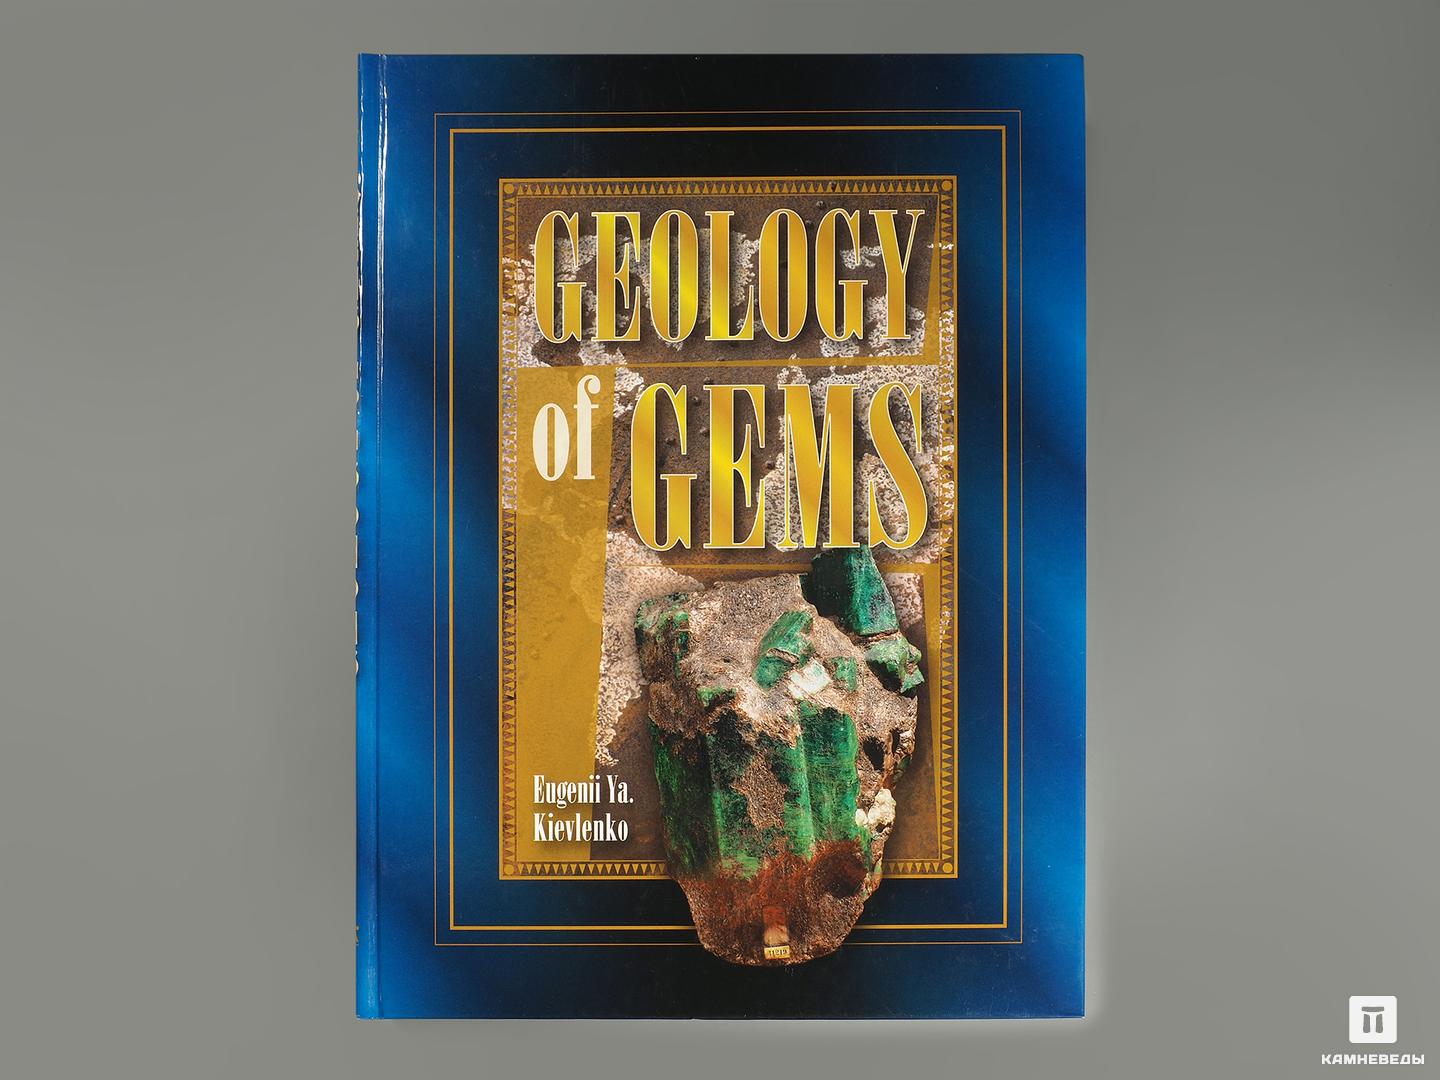 Книга: Eugenii Ya. Kievlenko «Geology of gems» репка the turnip на английском языке